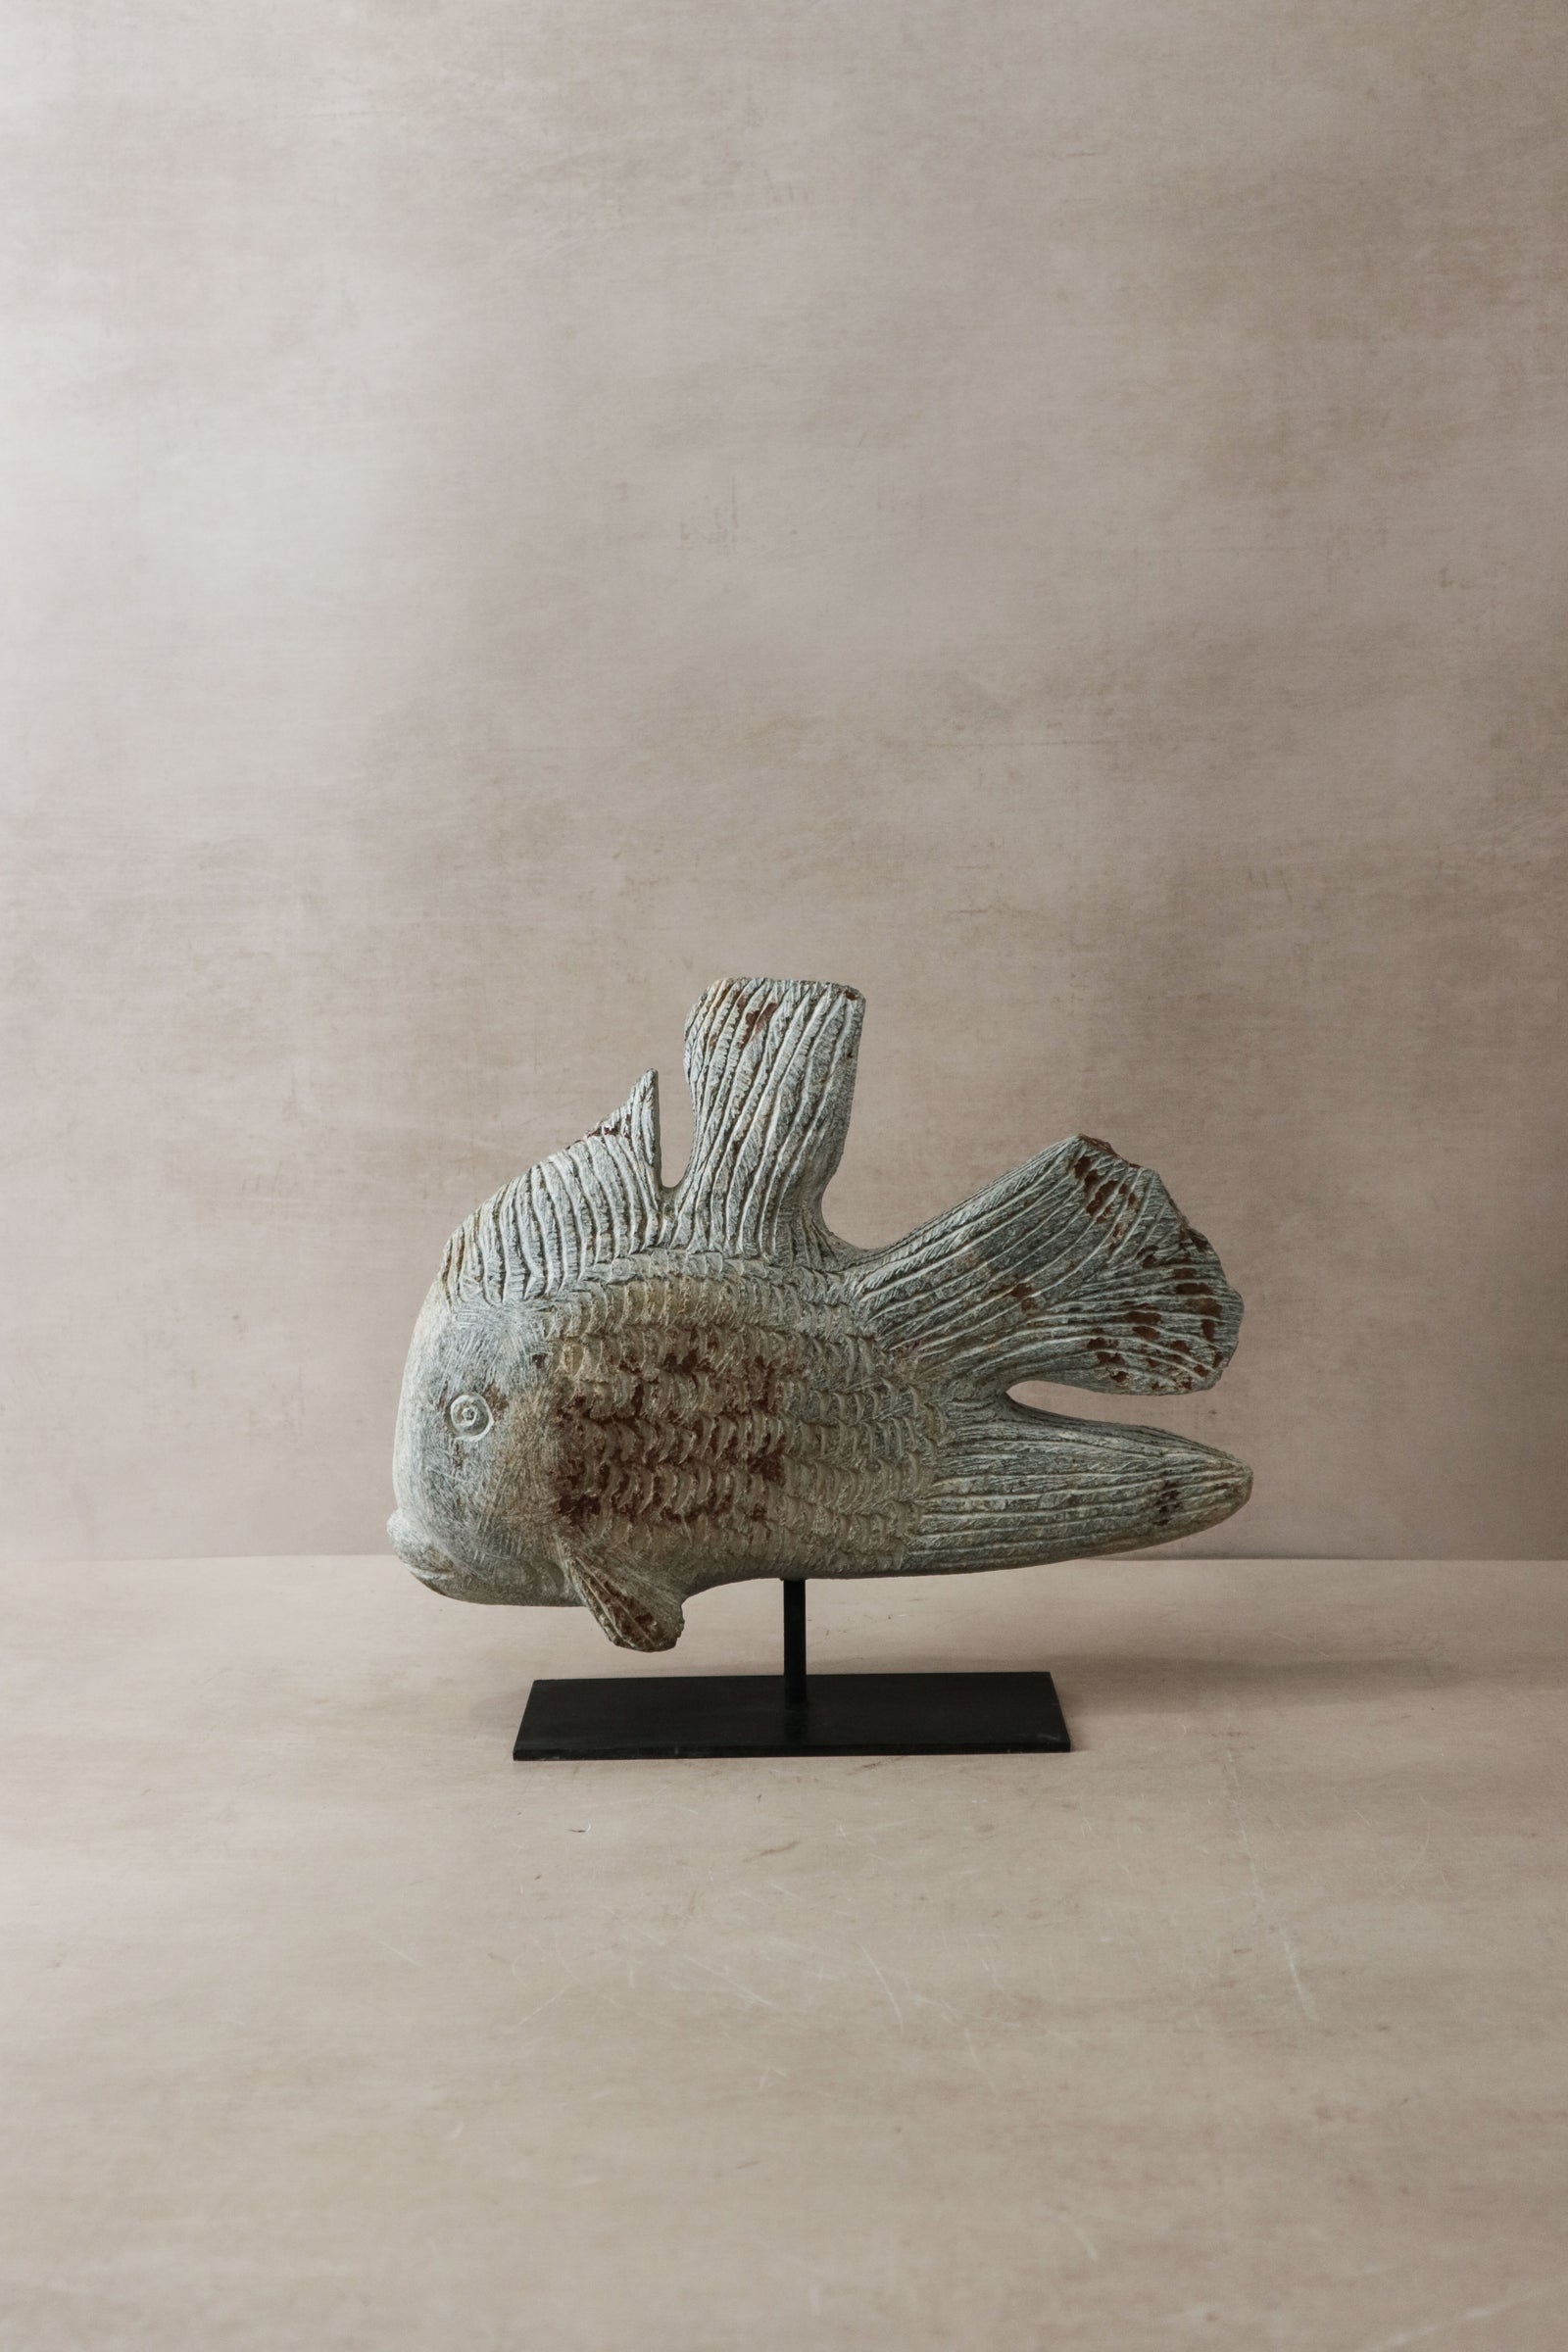 Stone Fish Sculpture - Zimbabwe - 38.2